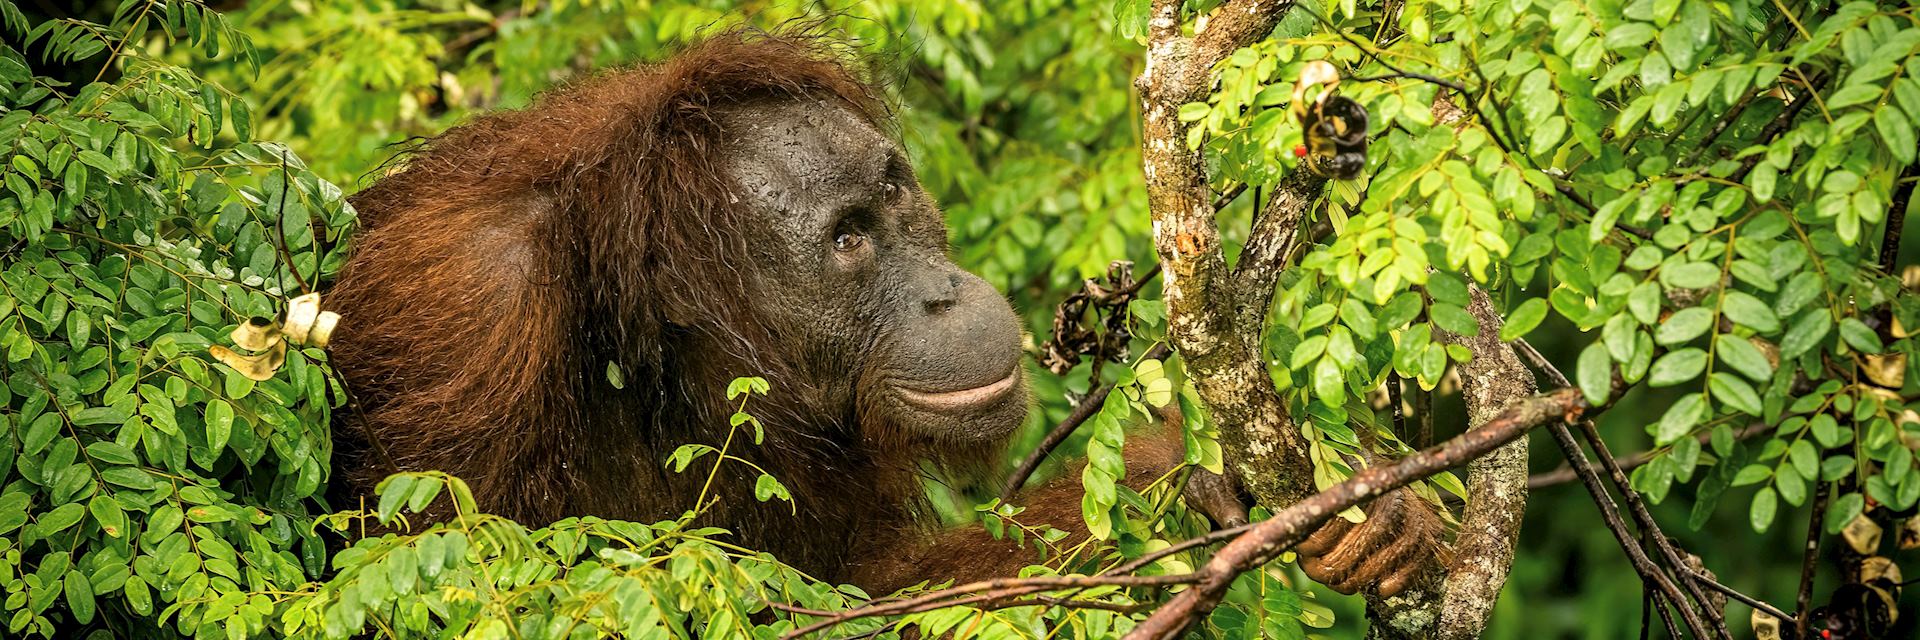 Female orangutan in Borneo